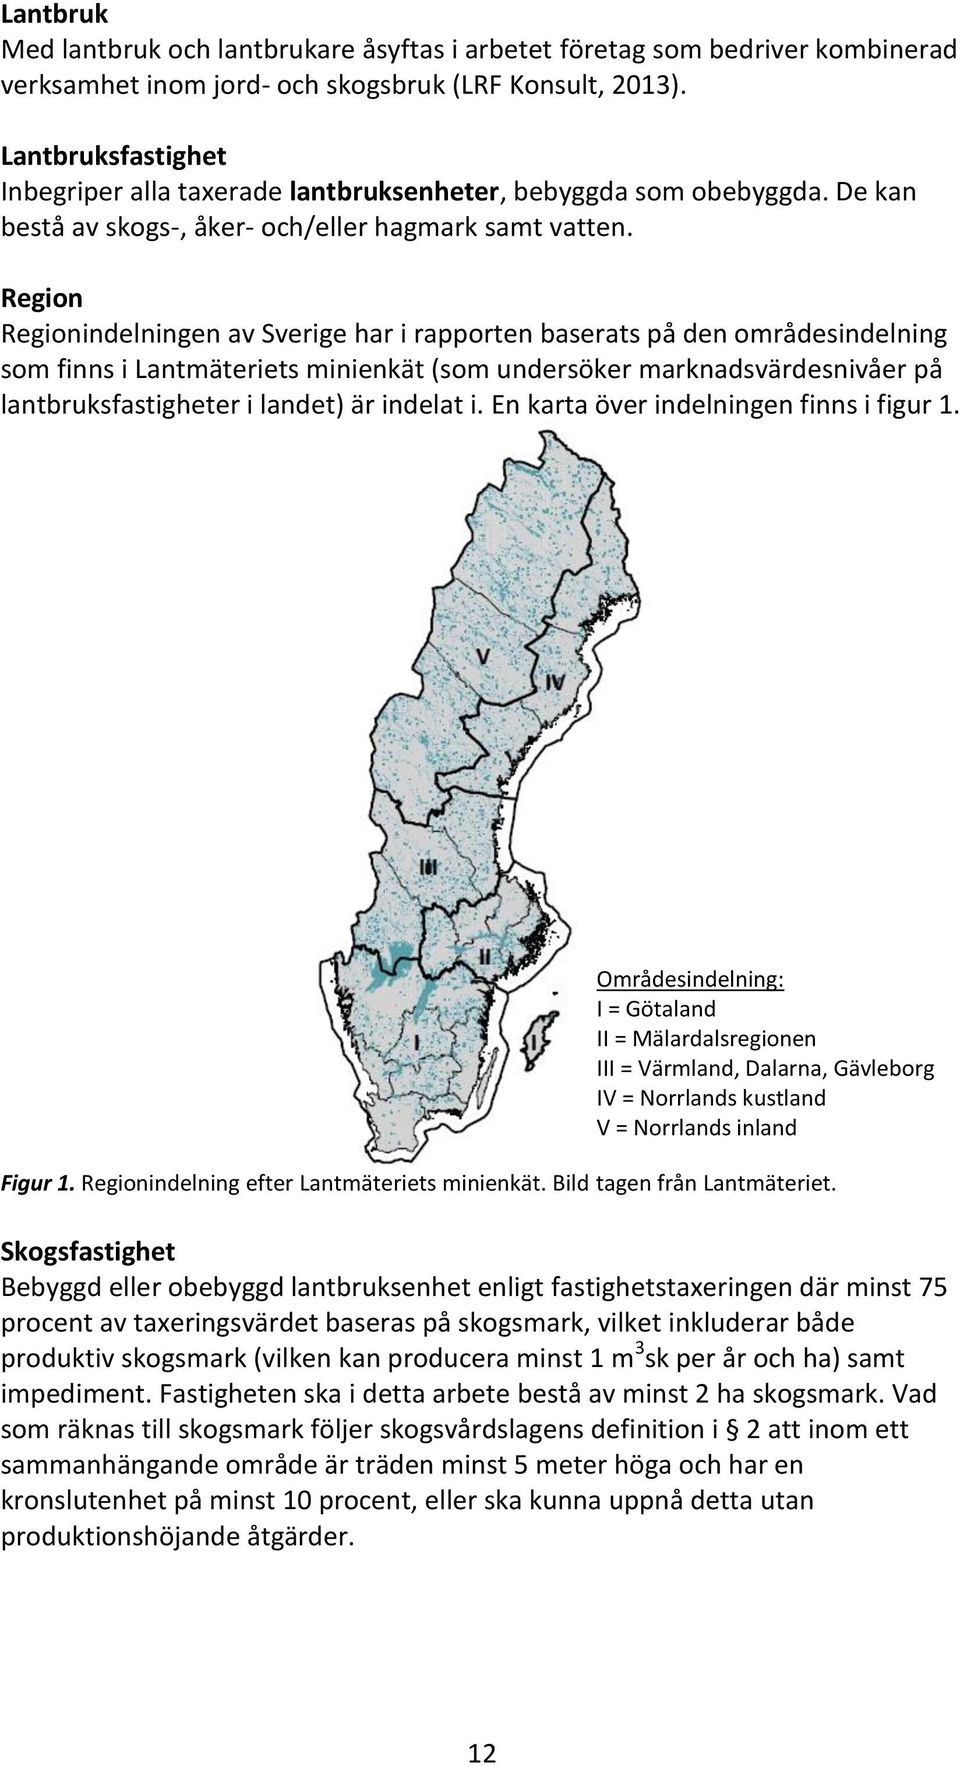 Region Regionindelningen av Sverige har i rapporten baserats på den områdesindelning som finns i Lantmäteriets minienkät (som undersöker marknadsvärdesnivåer på lantbruksfastigheter i landet) är